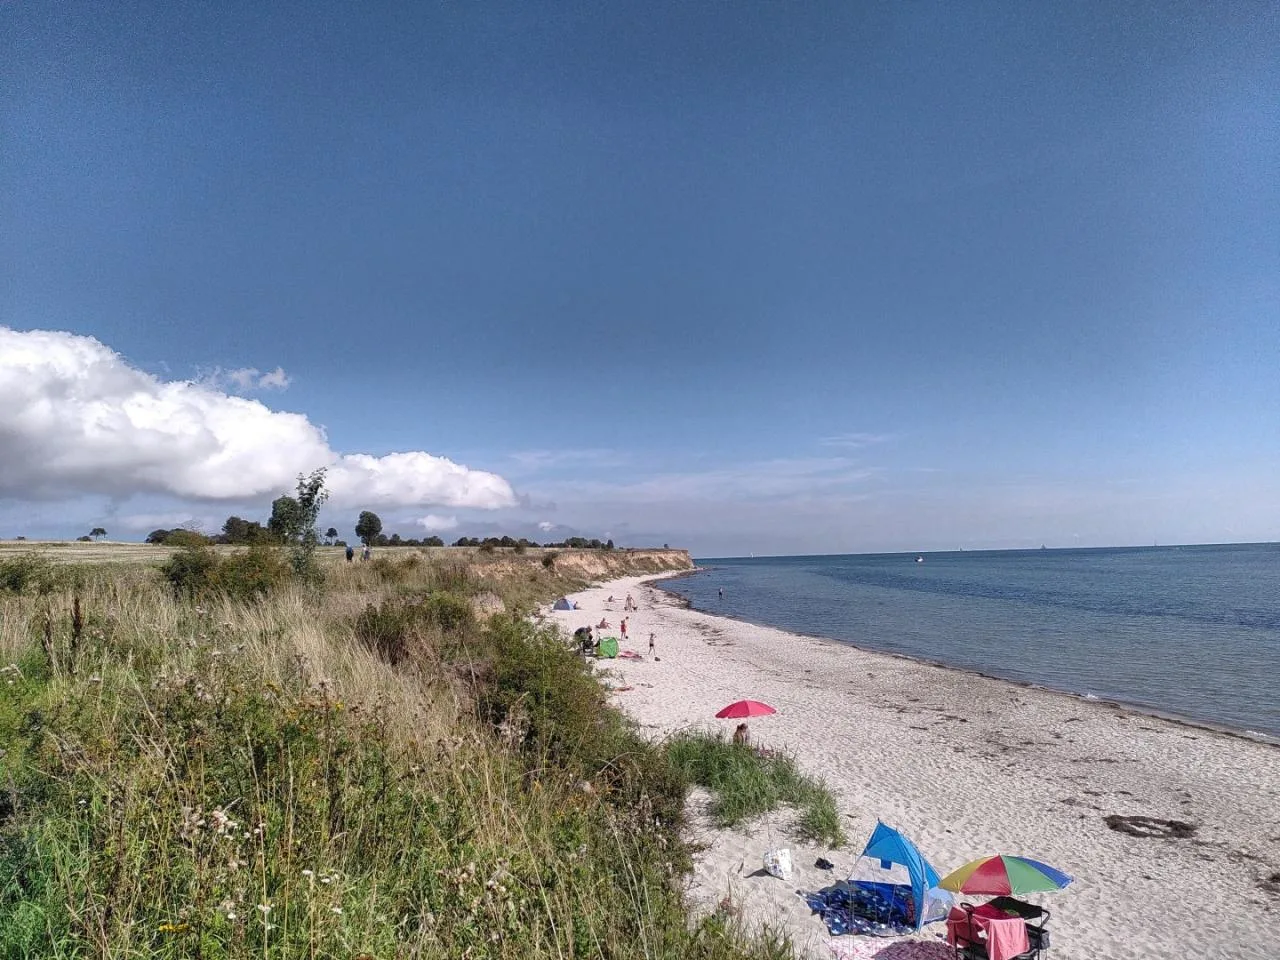 Strandfoto von Fehmarn. Es gibt einige Gäste am Strand. Der Himmel und das Meer sind blau. Im Hintergrund Wolken und die Steilküste.